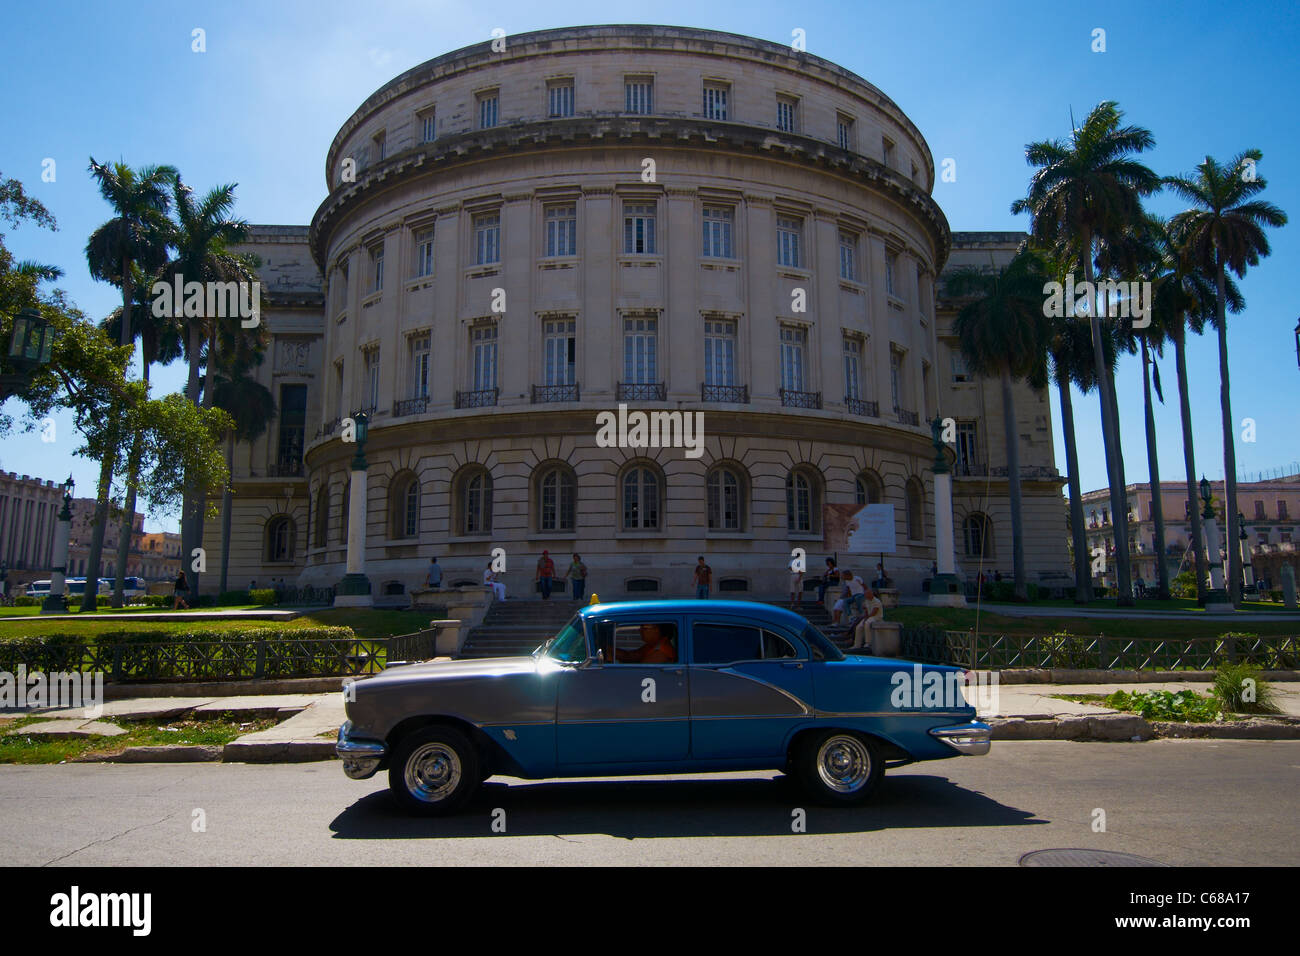 Große blaue amerikanische Oldtimer vorbei El Capitolio in Havanna Kuba bauen Stockfoto